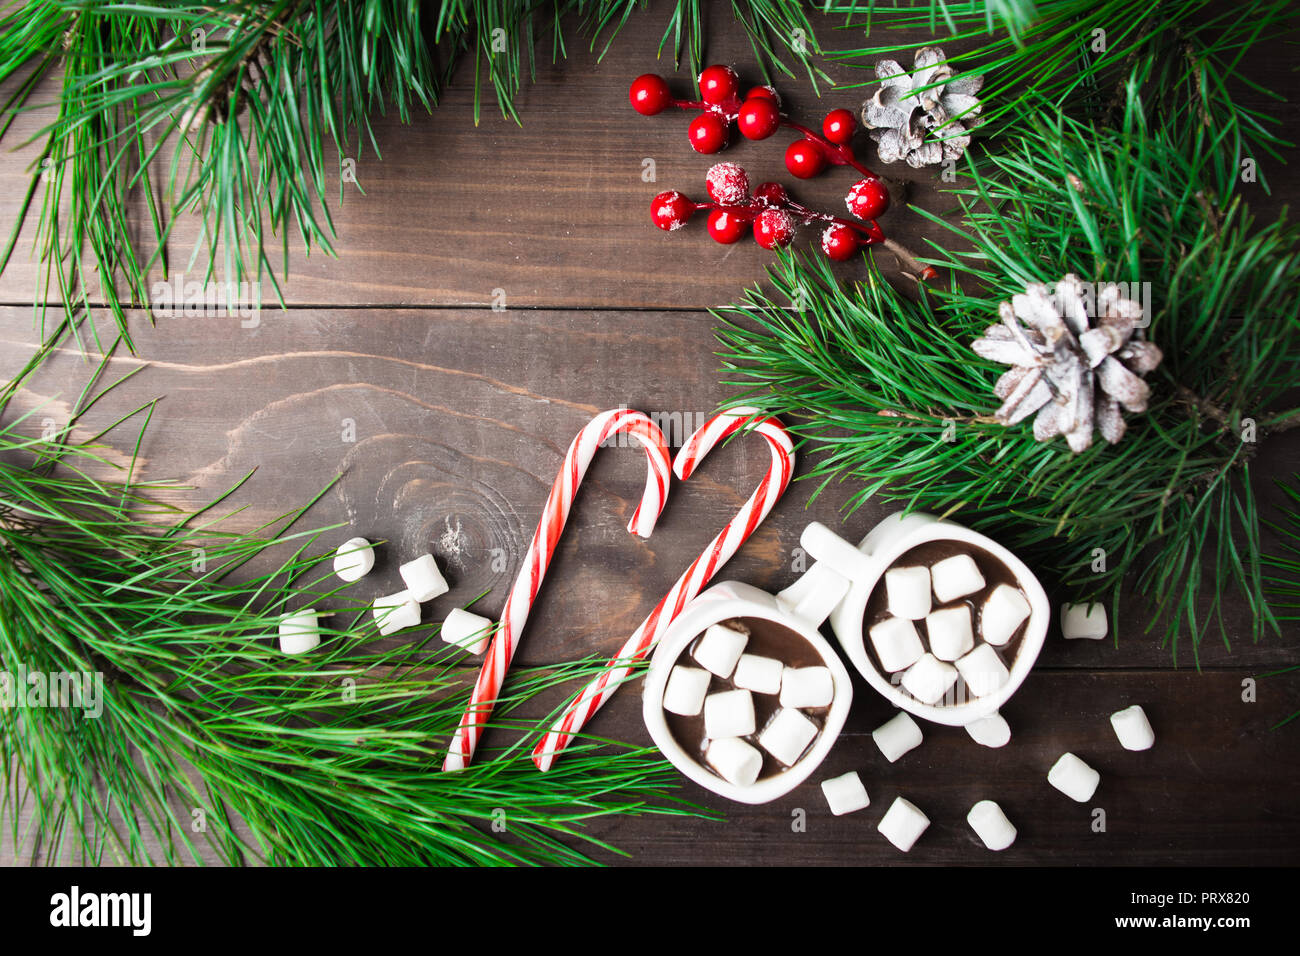 Natale ancora in vita con abete e cioccolata calda con copia spazio su sfondo di legno, vista aerea Foto Stock